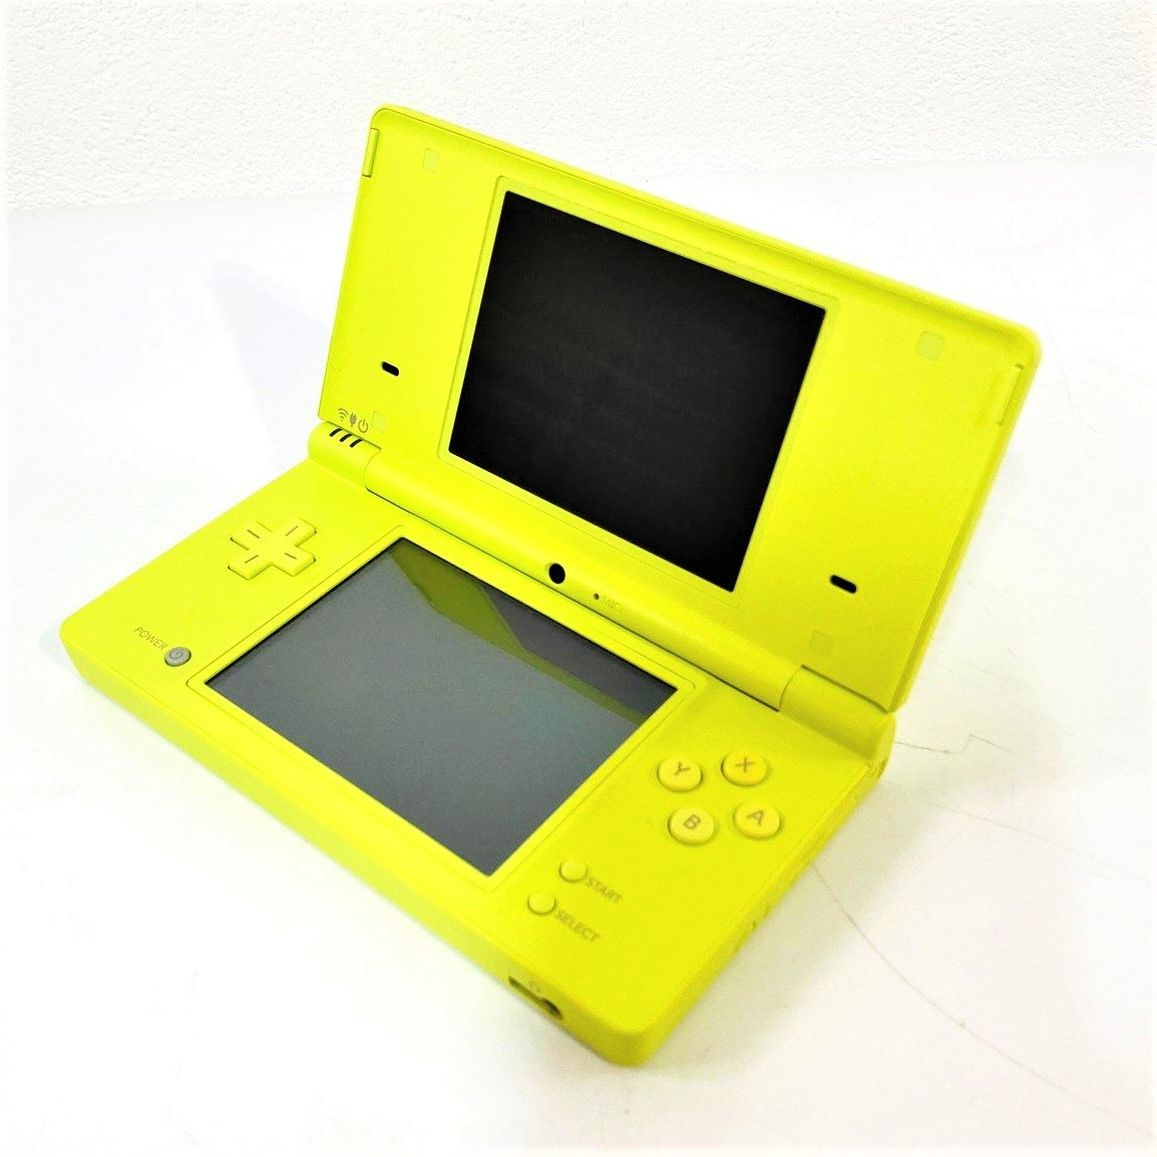 DS ニンテンドーDSi ライムグリーン 任天堂 本体 - Nintendo DS本体